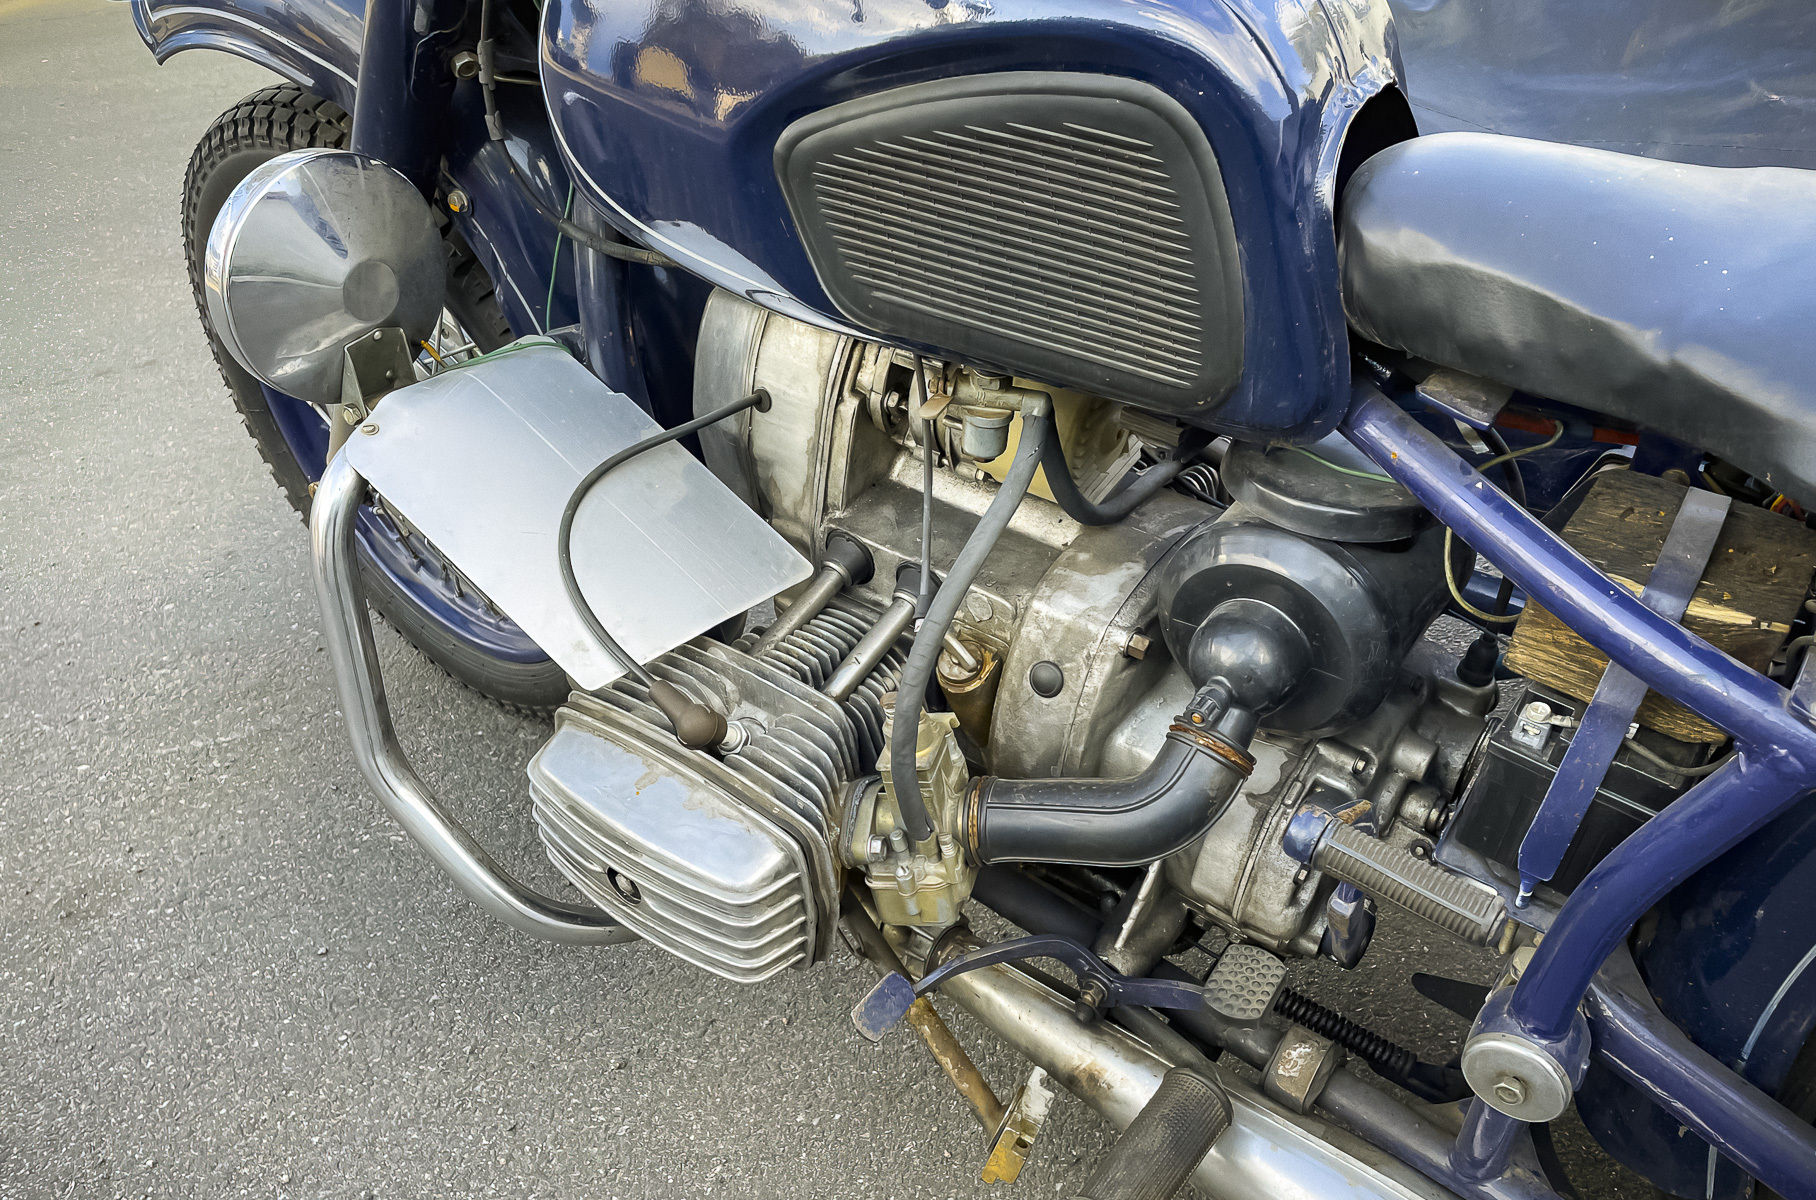 Видео: в гараже обнаружили 32-летний мотоцикл «Днепр» в идеальном состоянии и с минимальным пробегом